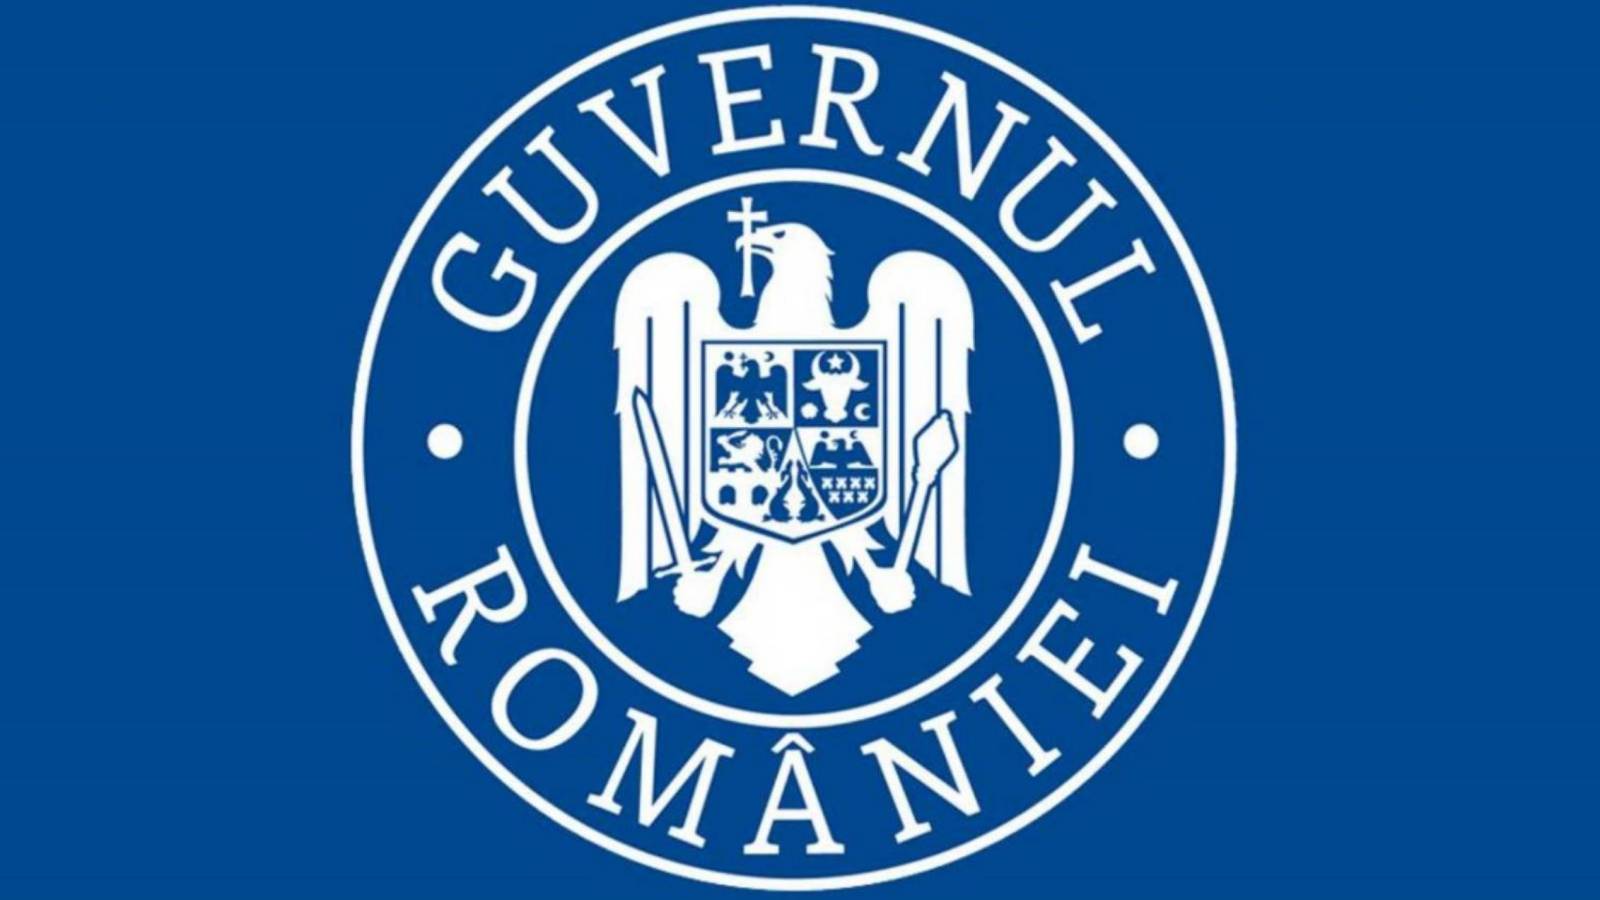 Die rumänische Regierung WARNUNG, dass die Rumänen Bescheid wissen müssen